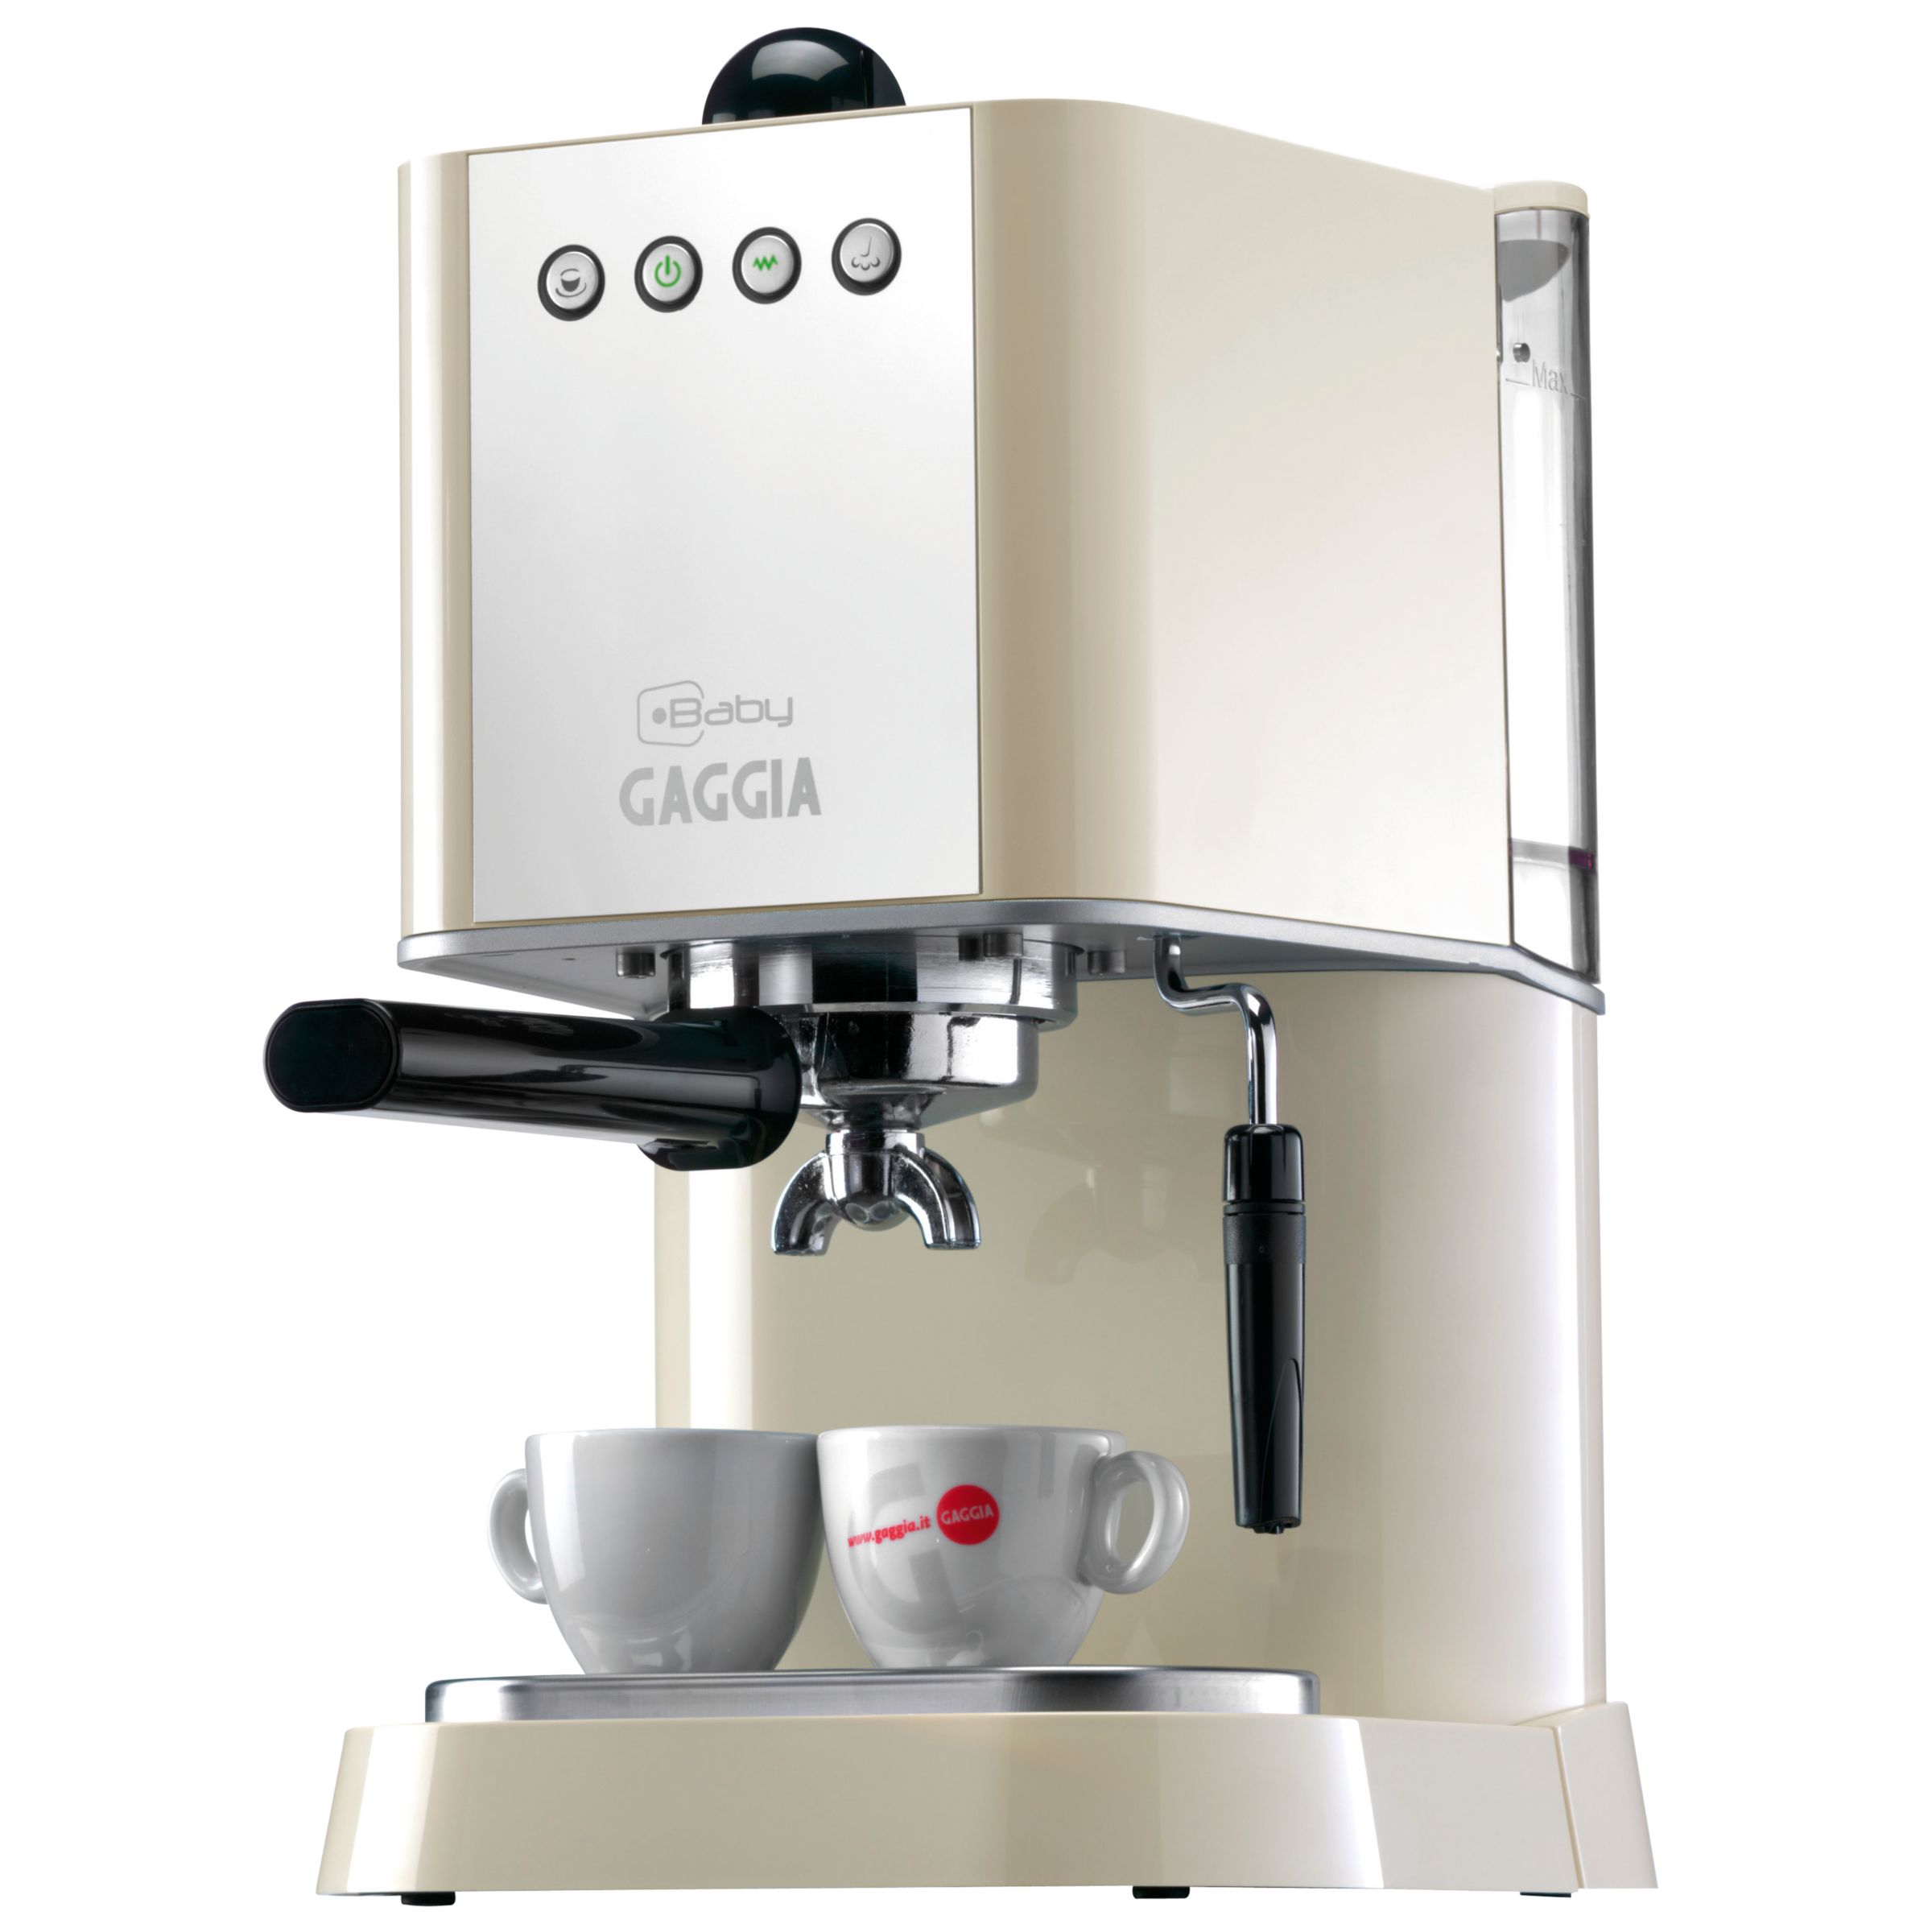 Gaggia RI8155 Baby Espresso Coffee Maker, Cream at John Lewis